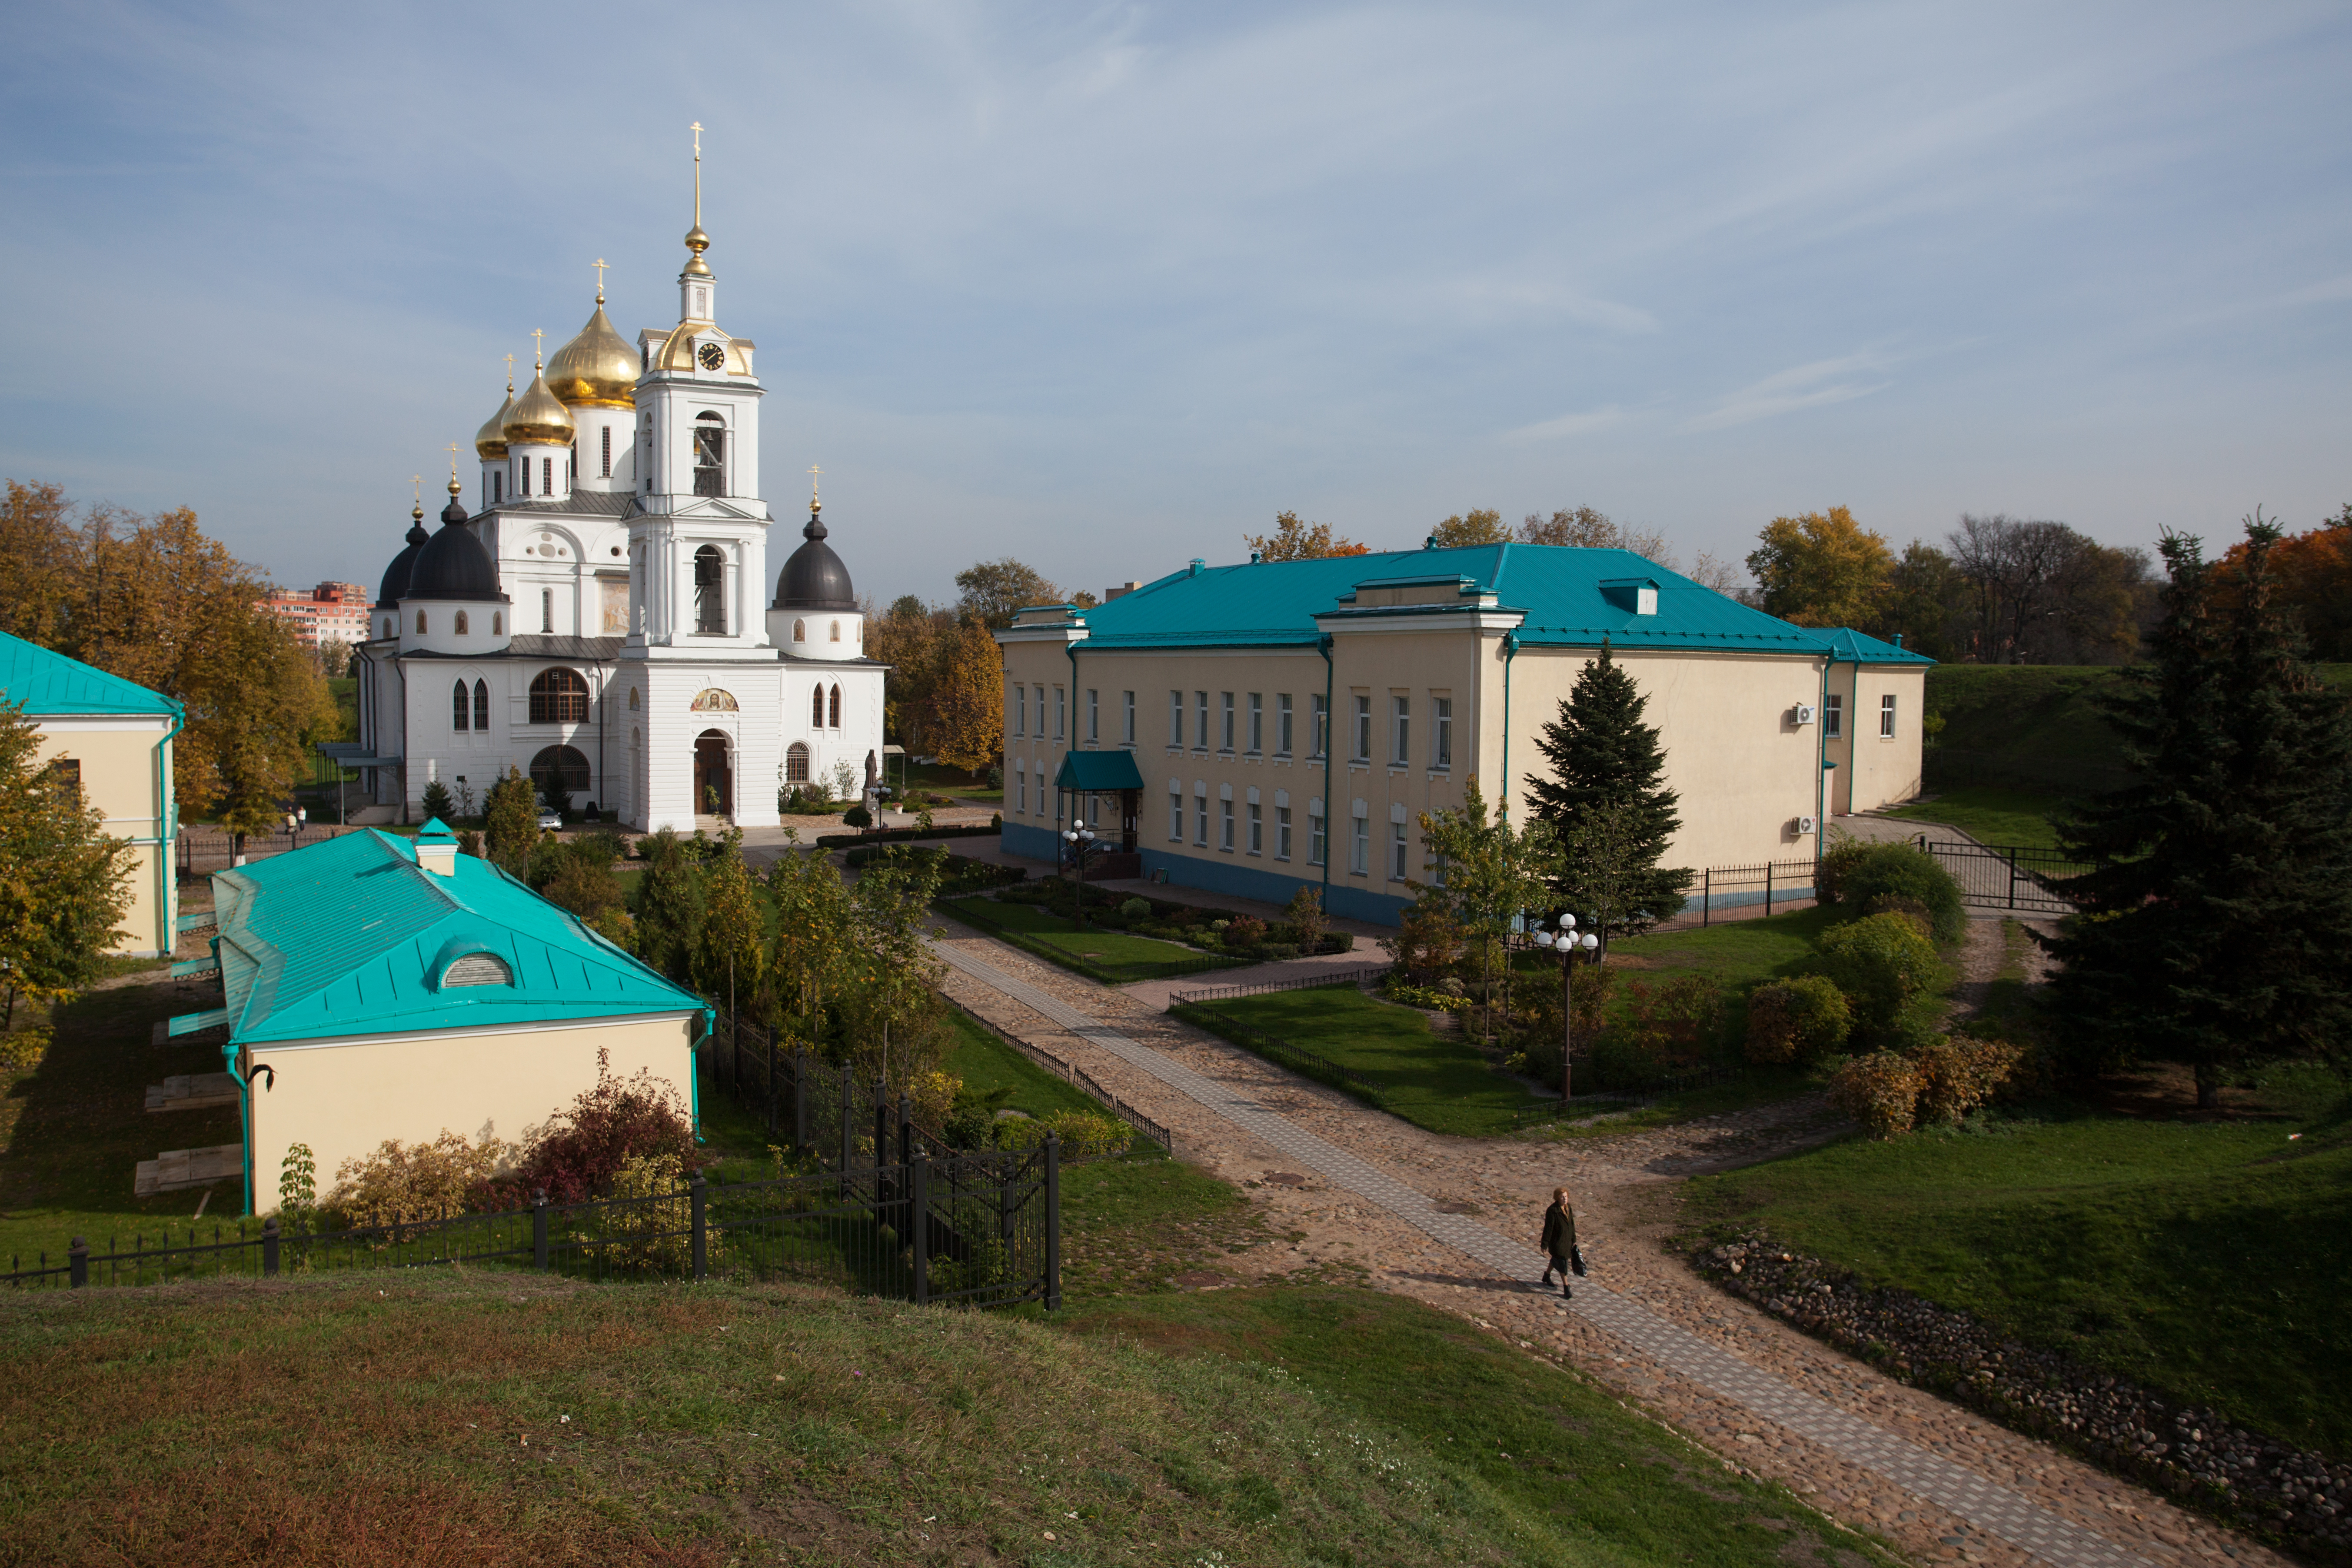 Дмитровский кремль представляет собой частично сохранившуюся древнерусскую крепость XII века